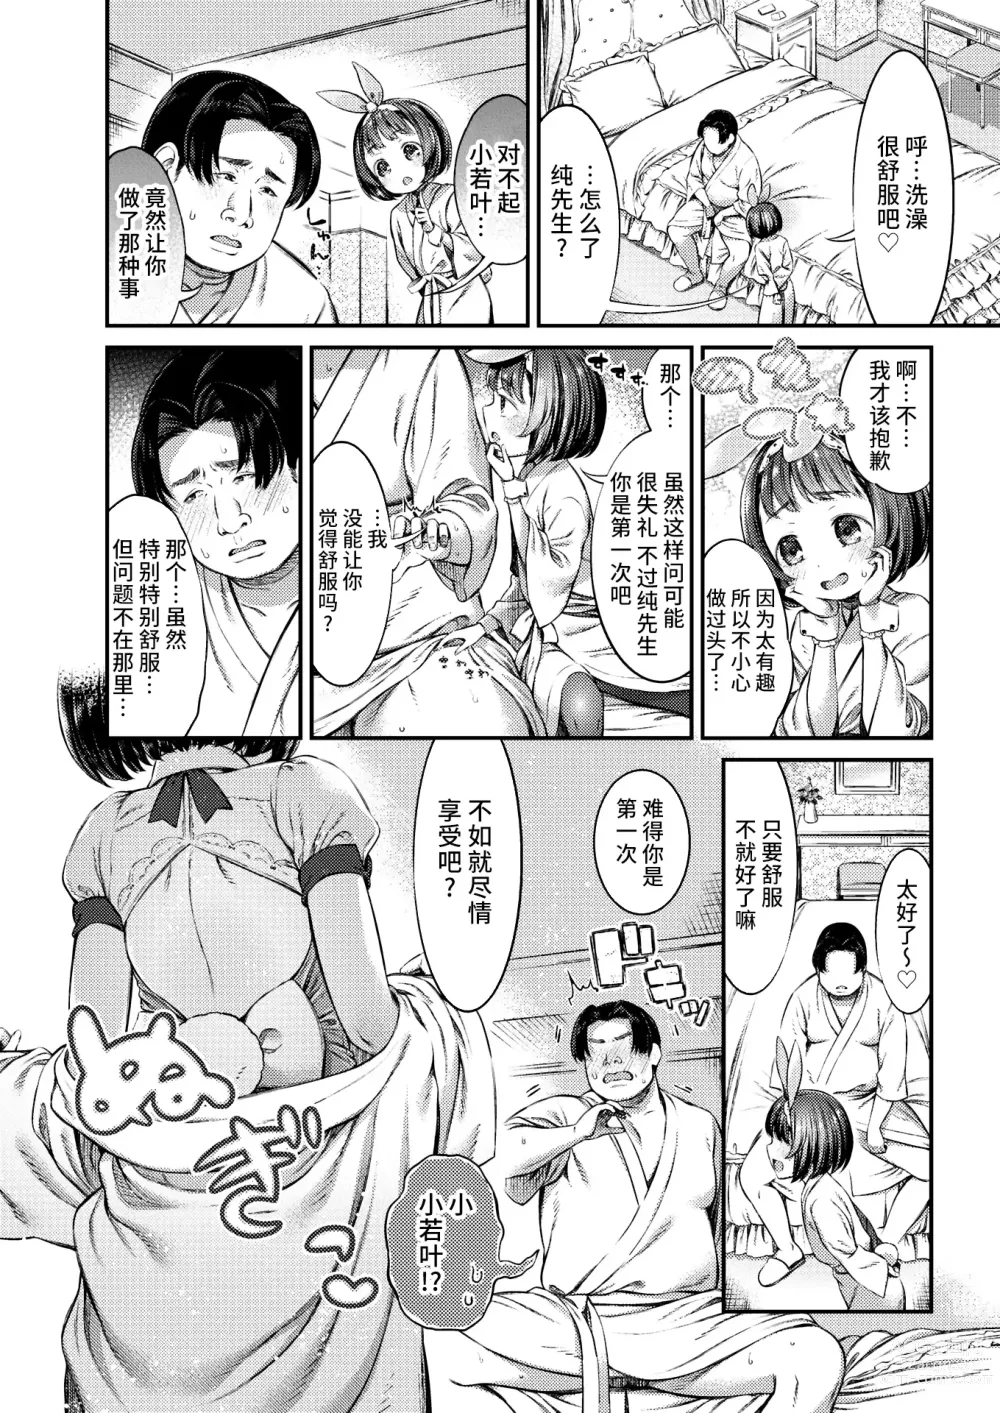 Page 10 of manga Papakatsu ni wa Kiken ga Ippai! - Papa Sex with Dangerous Girl